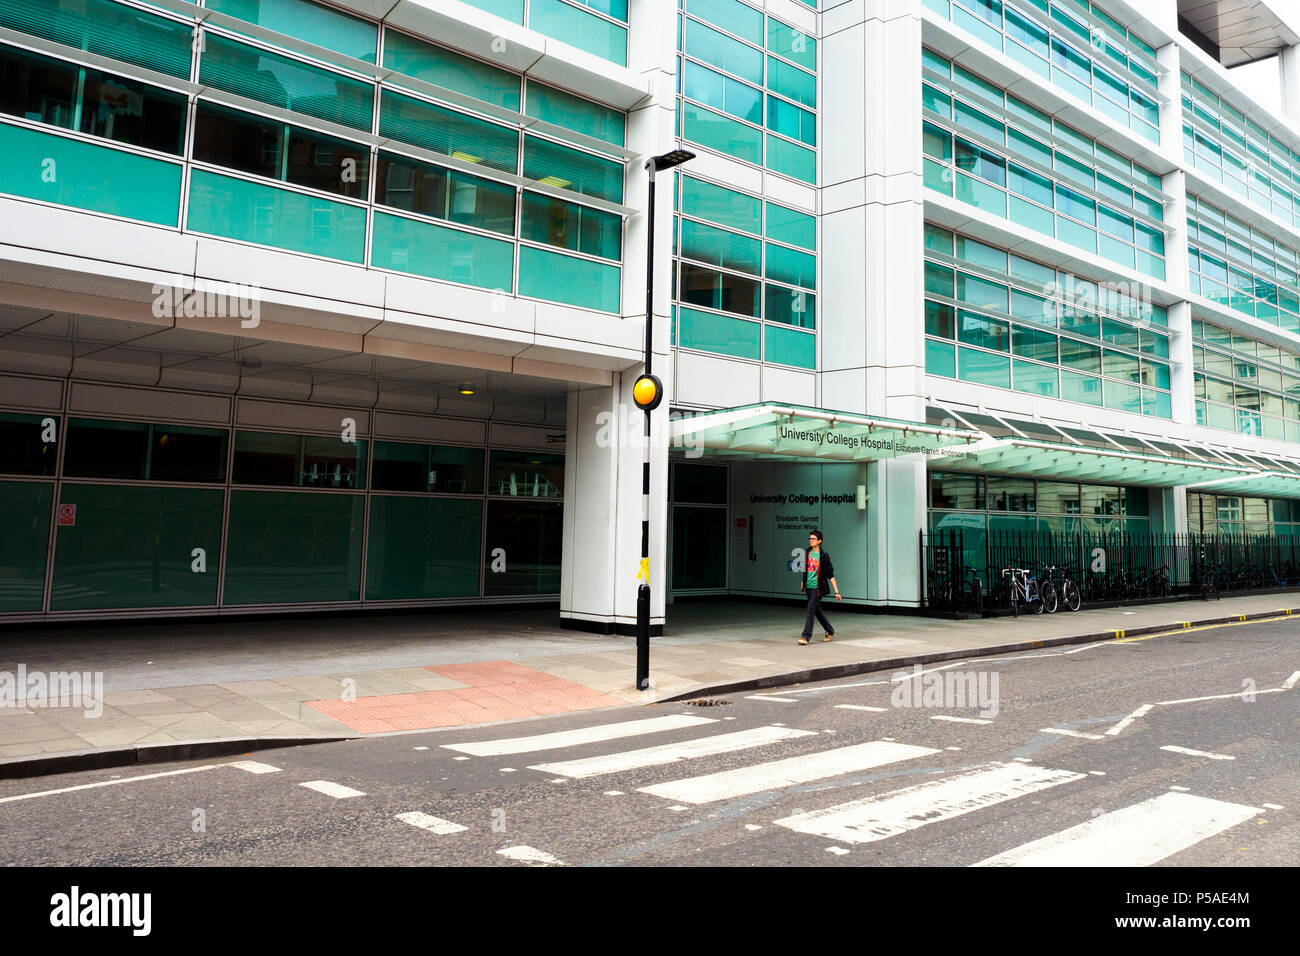 Elizabeth Garrett Anderson et obstétriques situé dans l'hôpital University College Hospital - Londres, Angleterre Banque D'Images